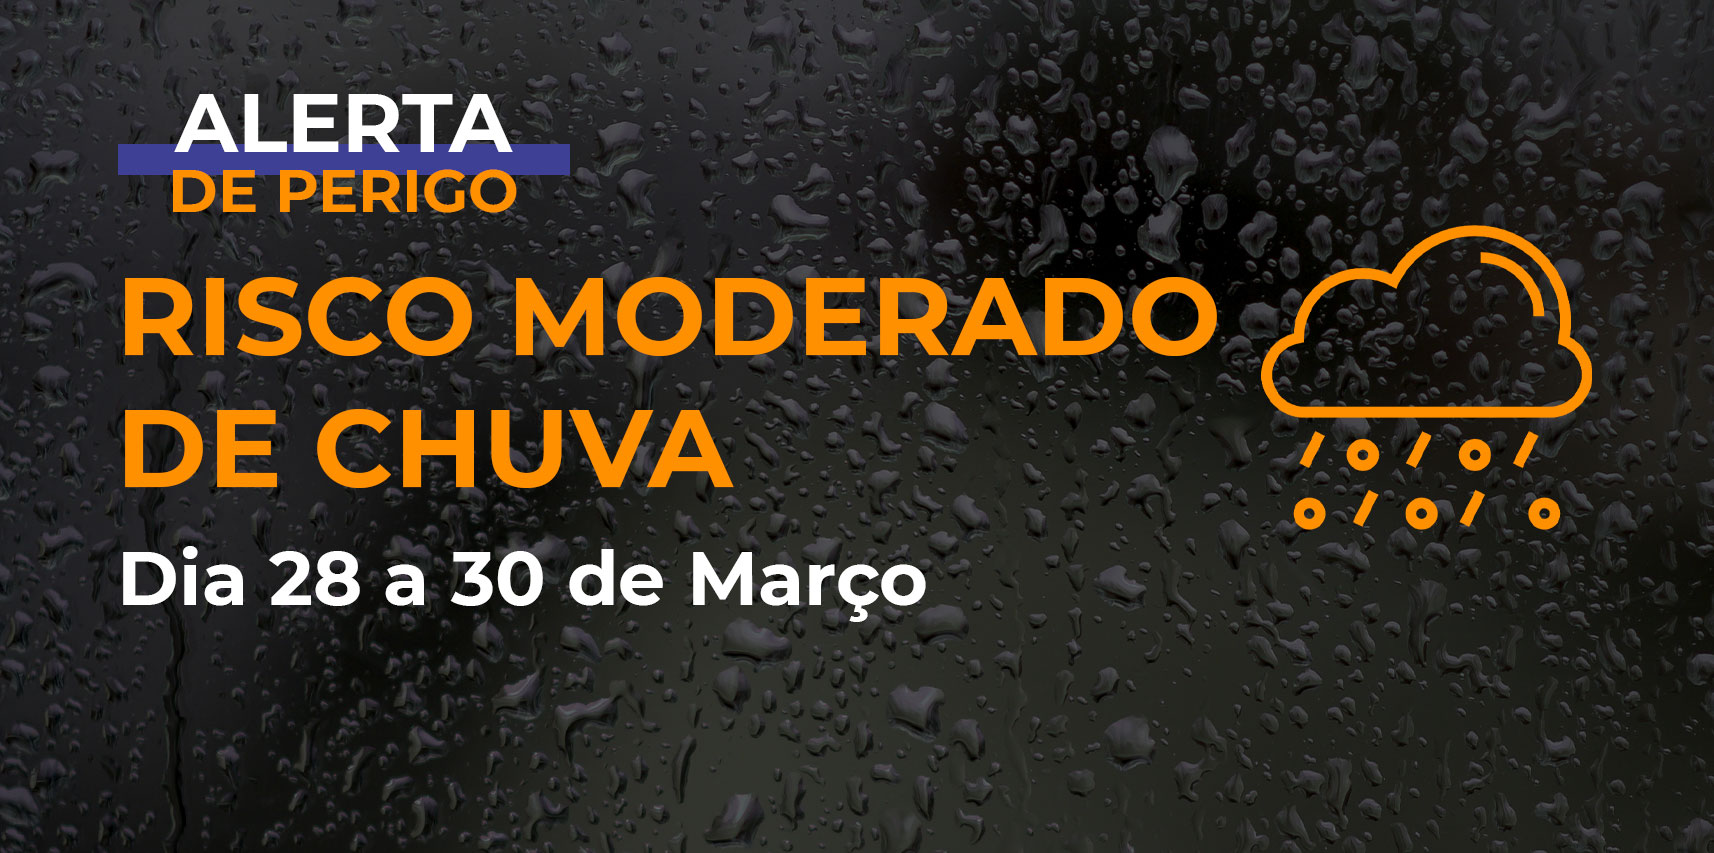 Defesa Civil de Vargem Alta emite alerta para o Risco Moderado de Chuva para os dias 28 a 30 de março